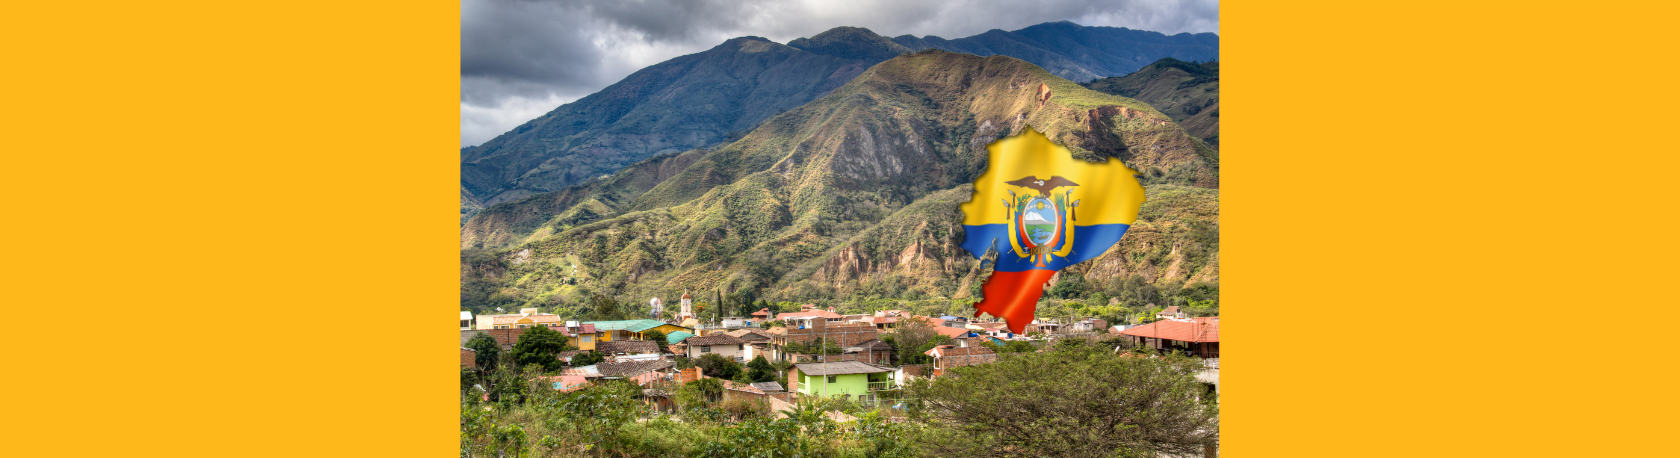 ¿Sabías que en Ecuador hay un lugar conocido como el "Valle de la Longevidad"? - Easy Español